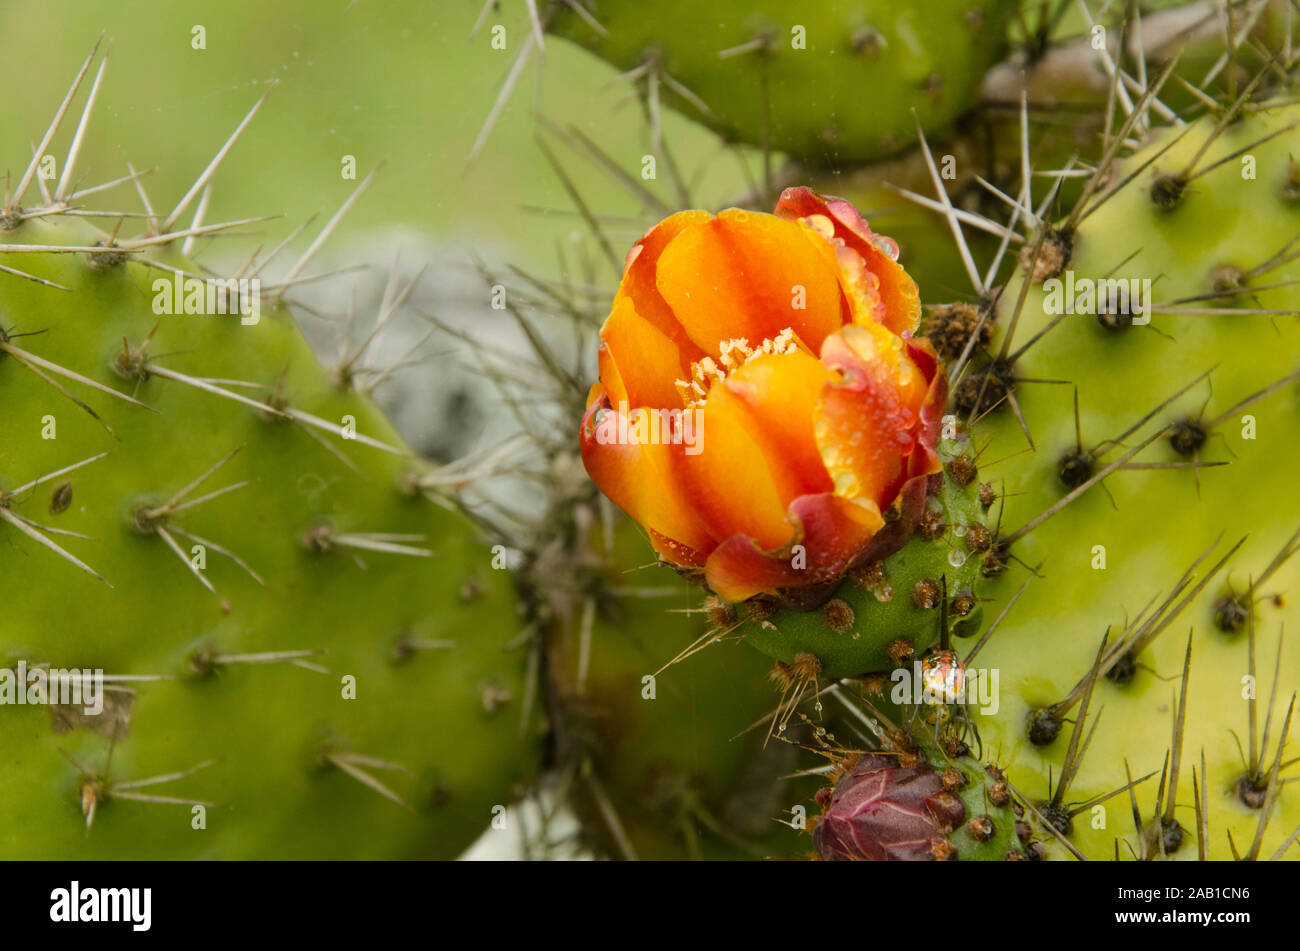 L'aridité du climat et végétation : le nopal, cactus fleur jaune et orange Banque D'Images